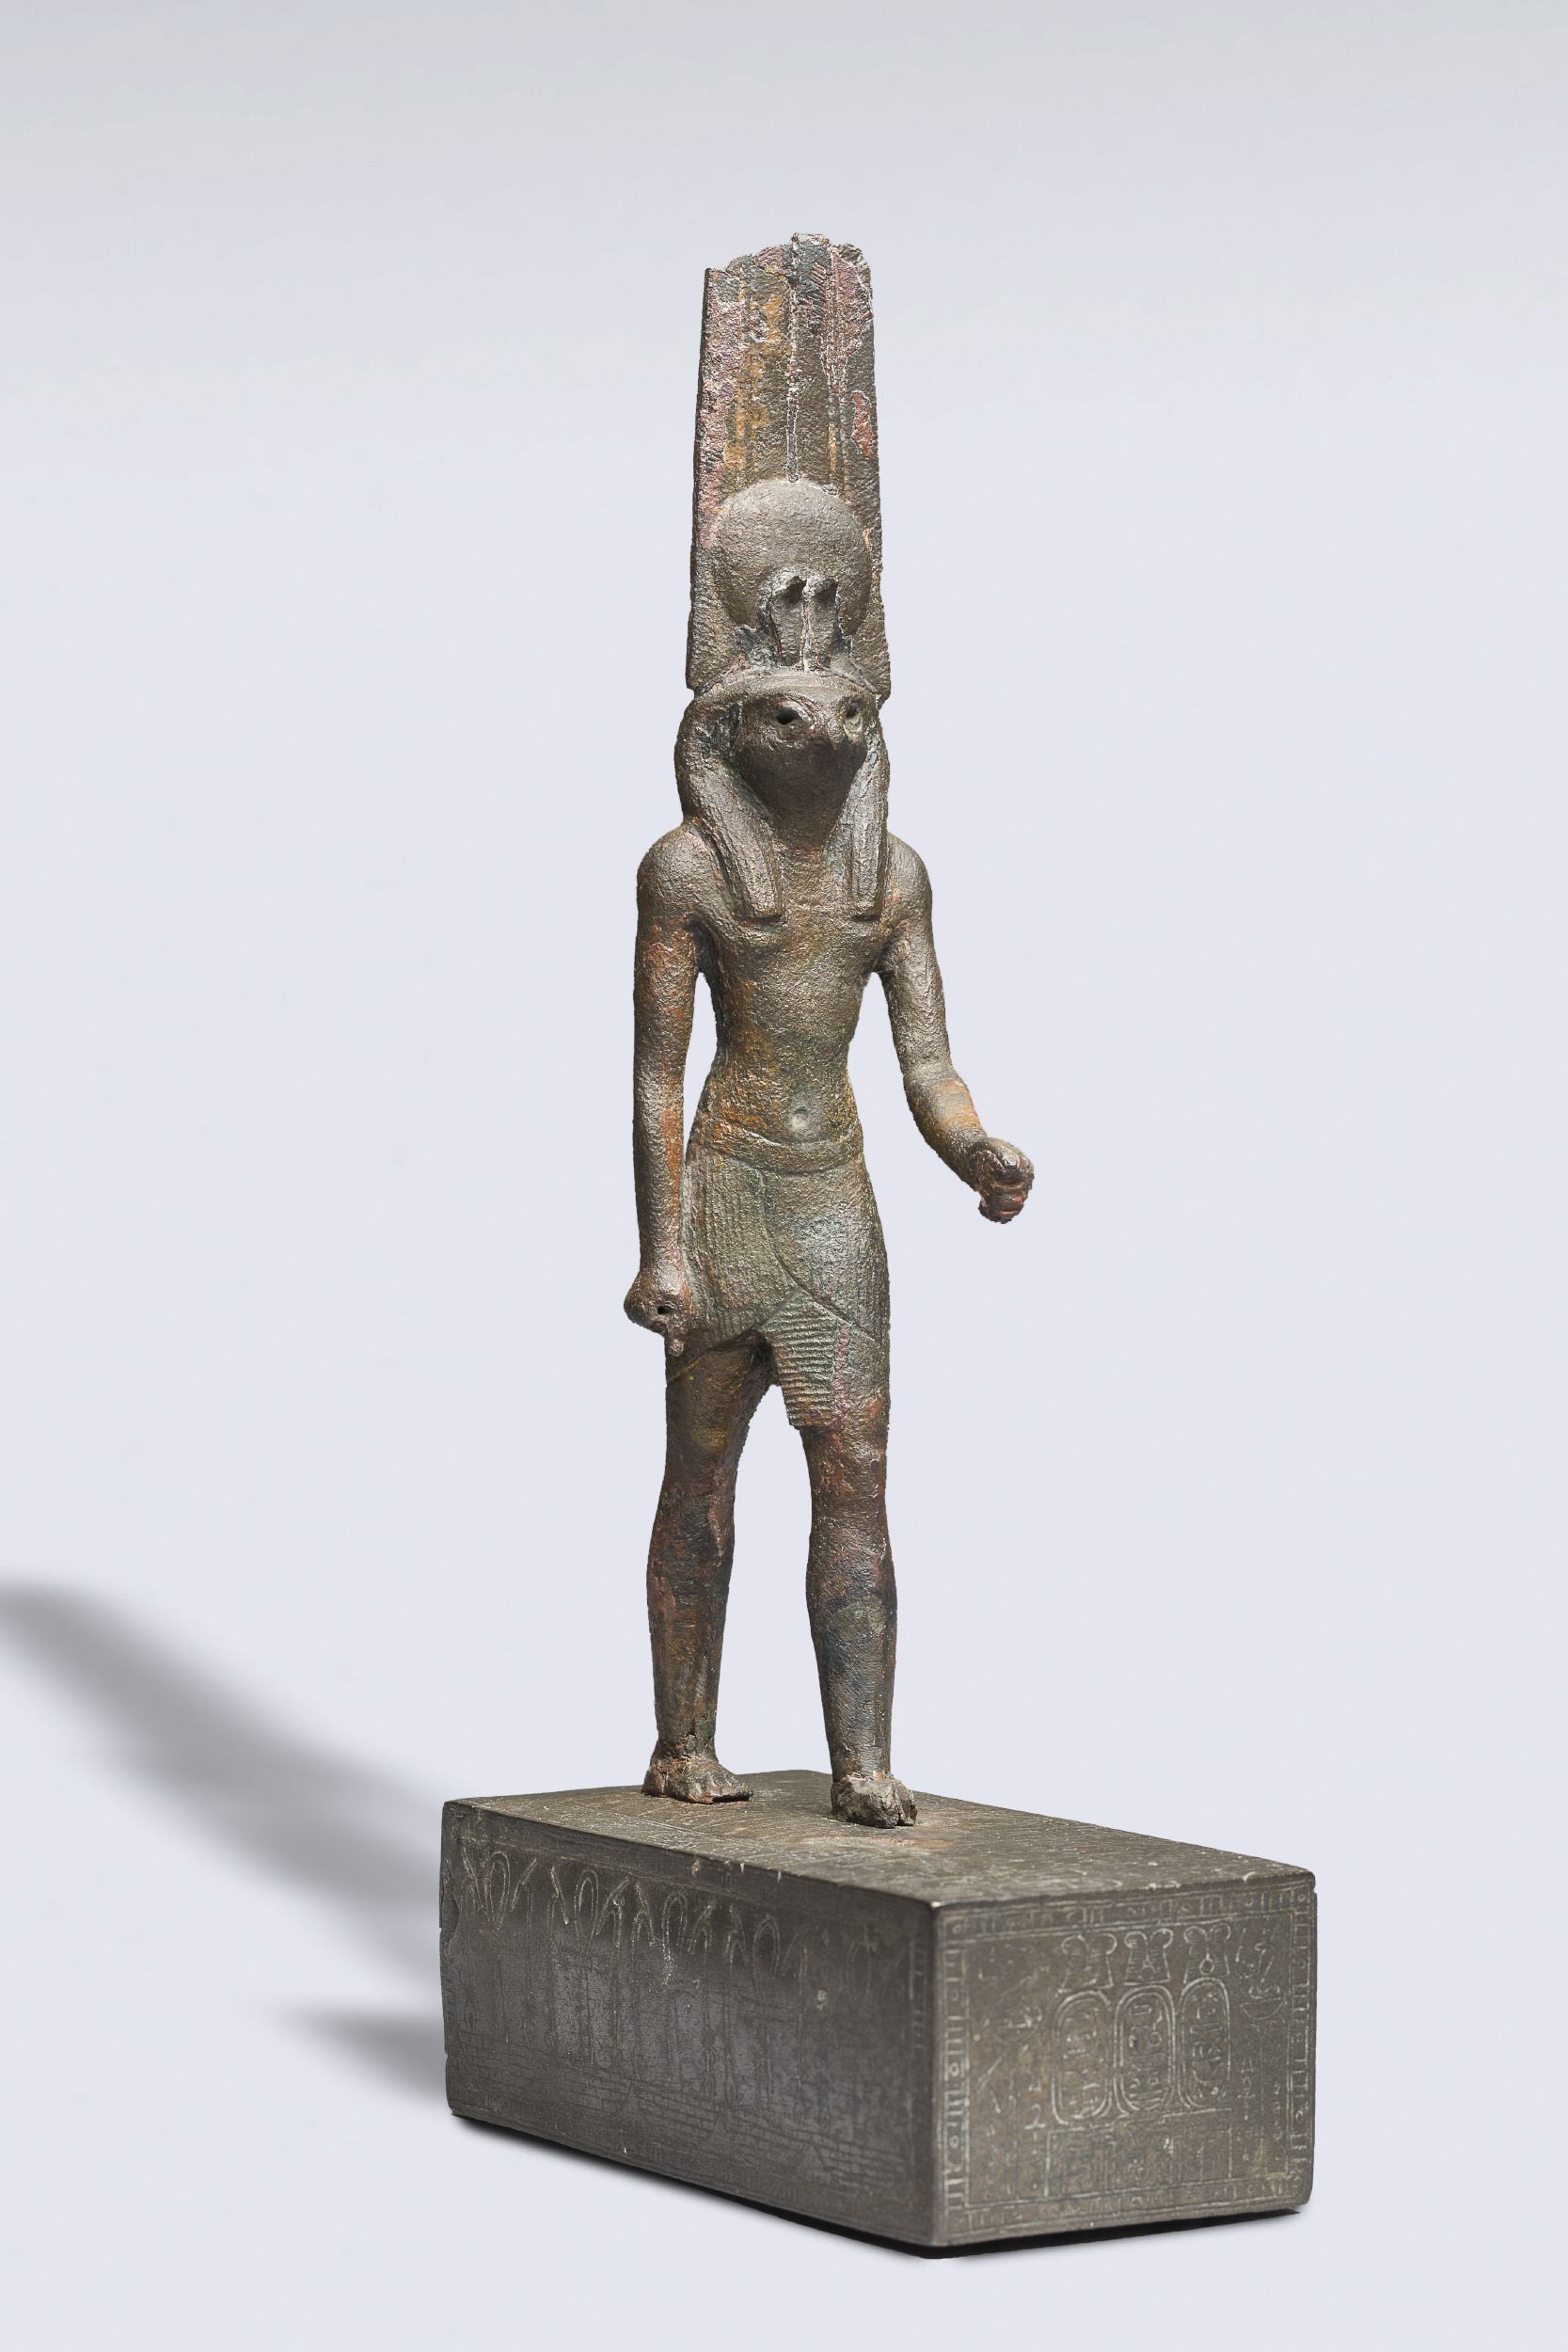 Amon-Rê-Montou, Égypte, 715-332 avant notre ère. Bronze. © Agence photographique du musée Rodin, J. Manoukian